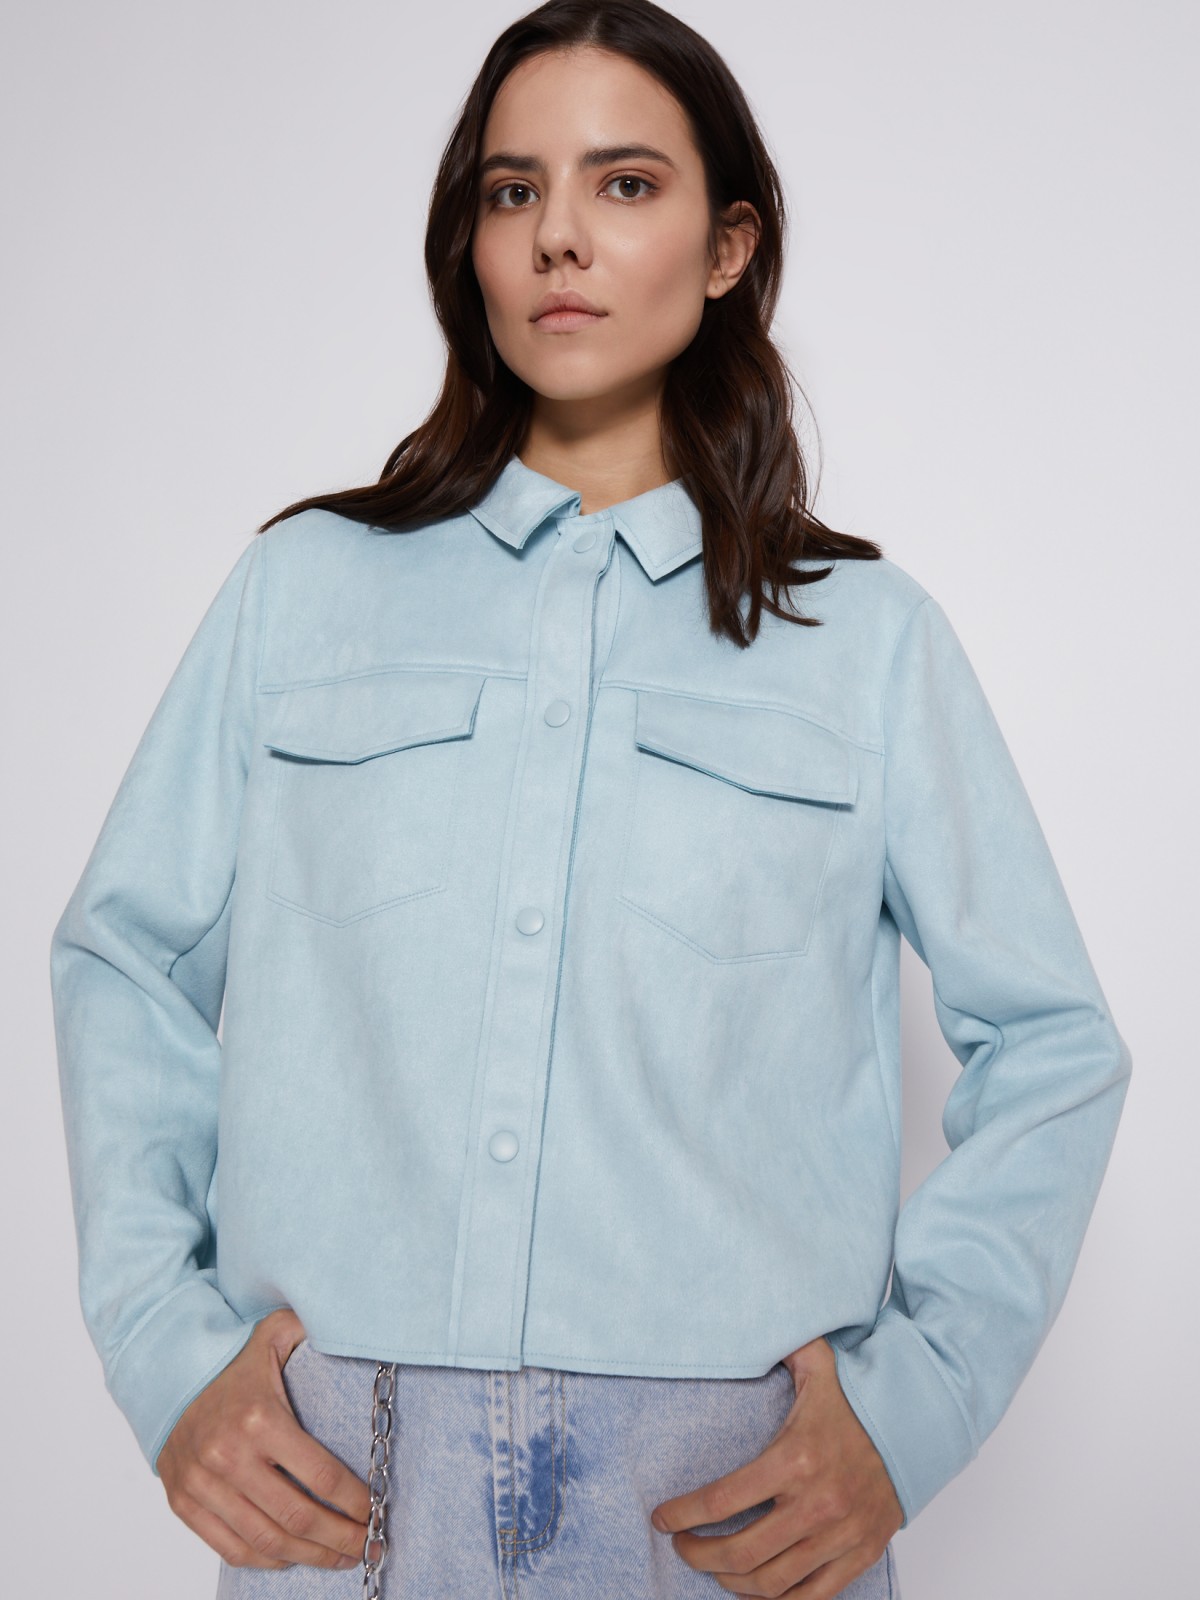 Куртка-рубашка из экозамши zolla 023215453043, цвет мятный, размер XS - фото 4